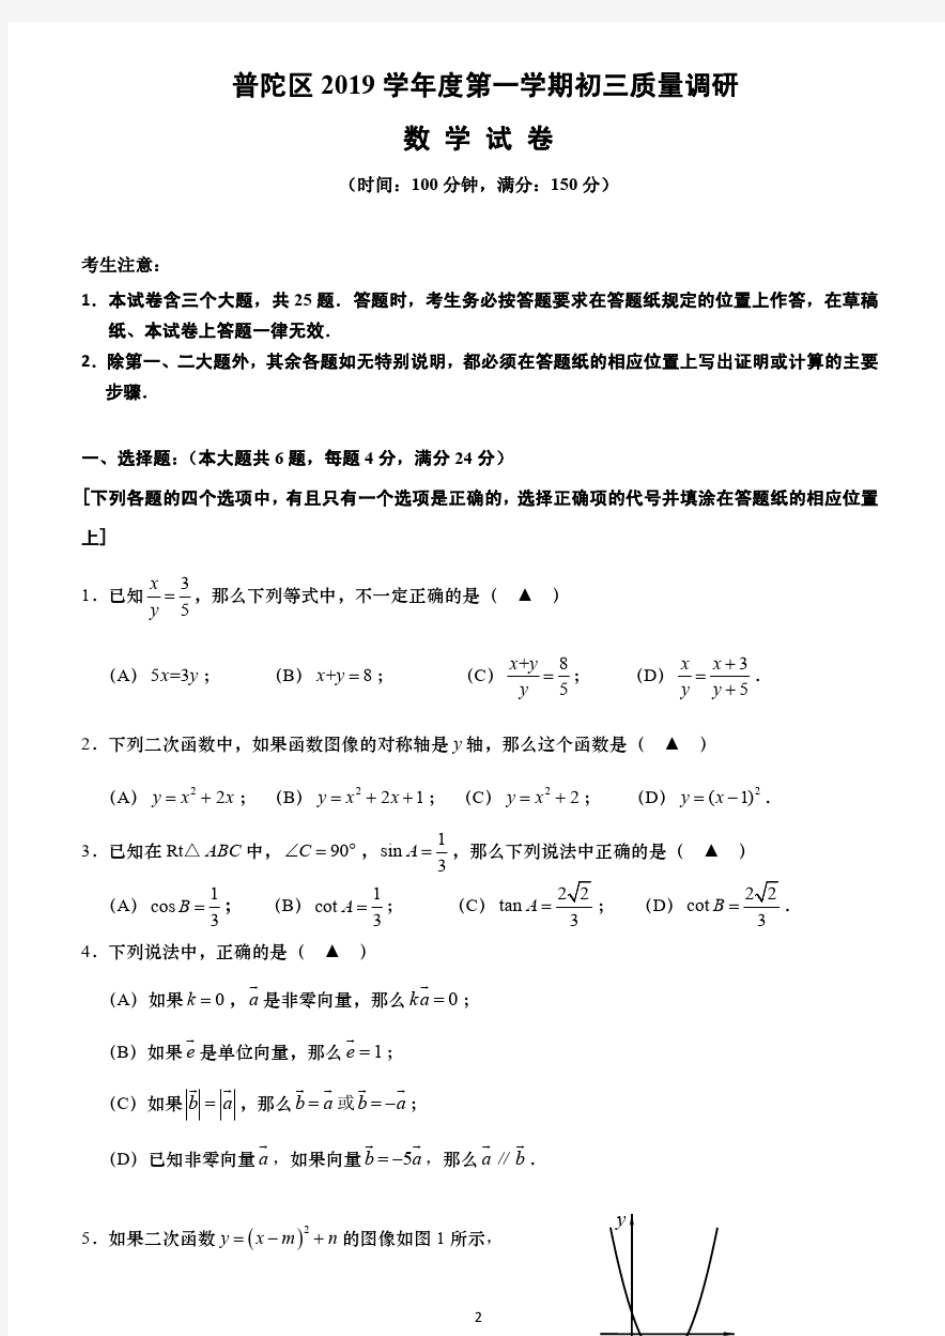 2020年上海市各区初中数学一模试卷含答案(精华版)_20200217103640